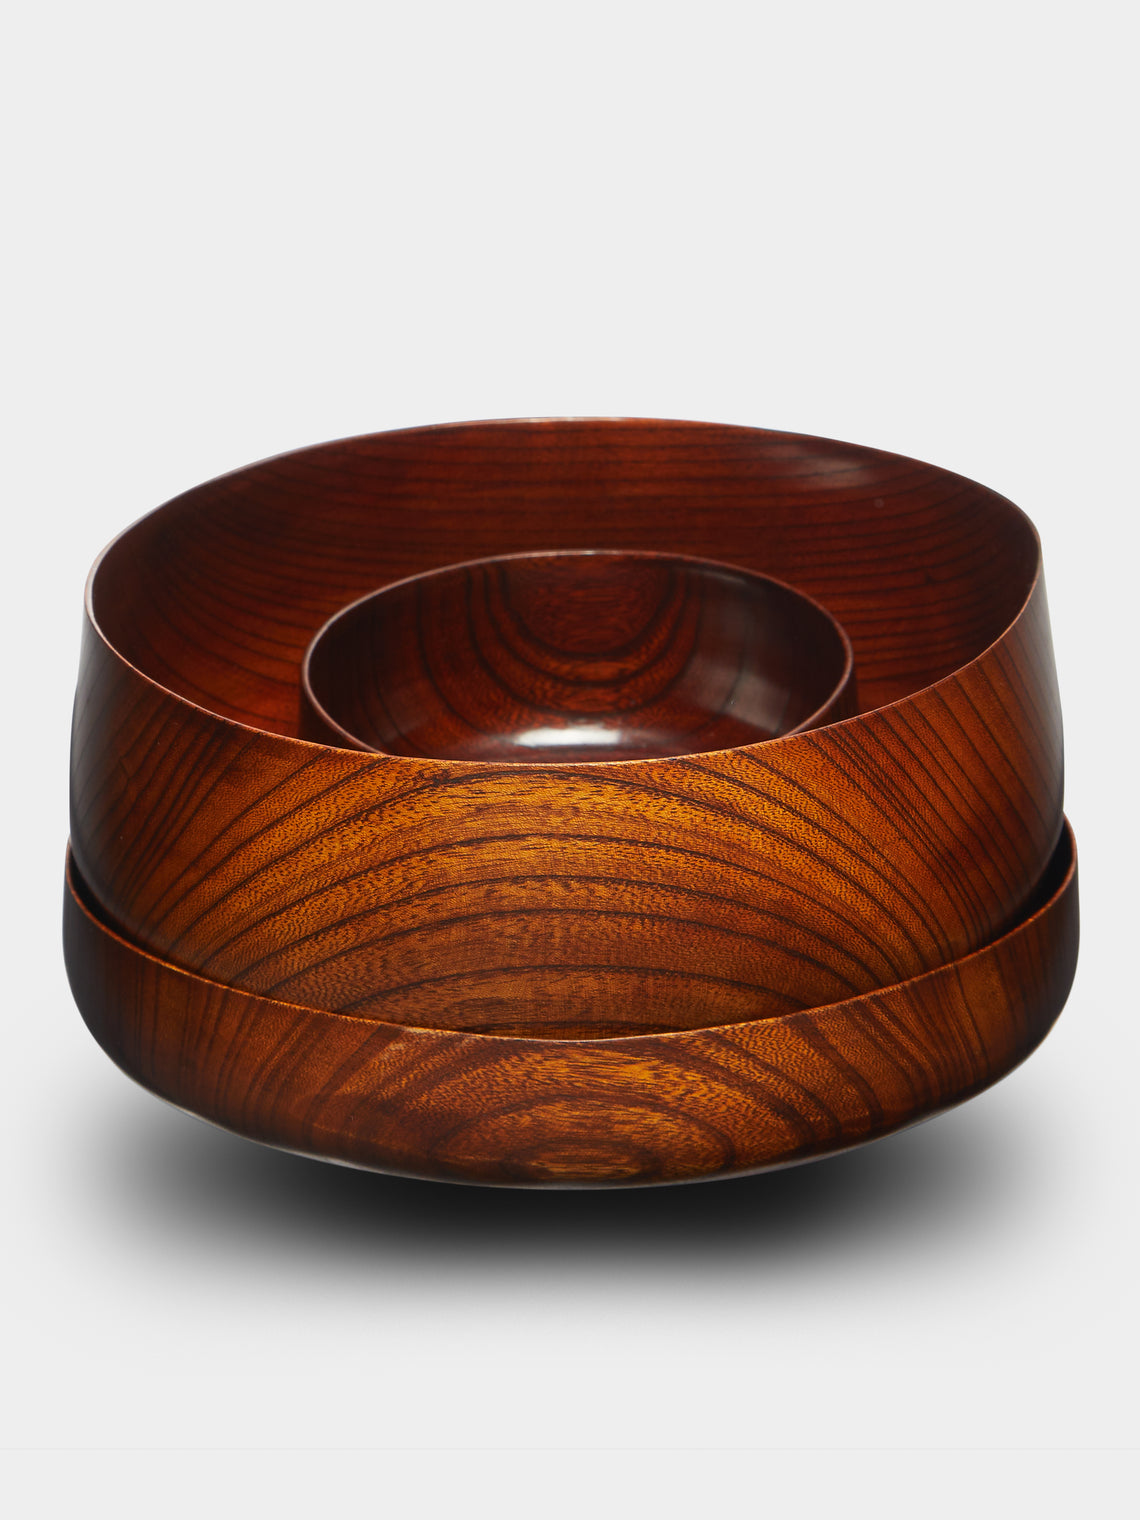 Suk Keun Kang - Ottchil Wood Small Footed Bowl -  - ABASK